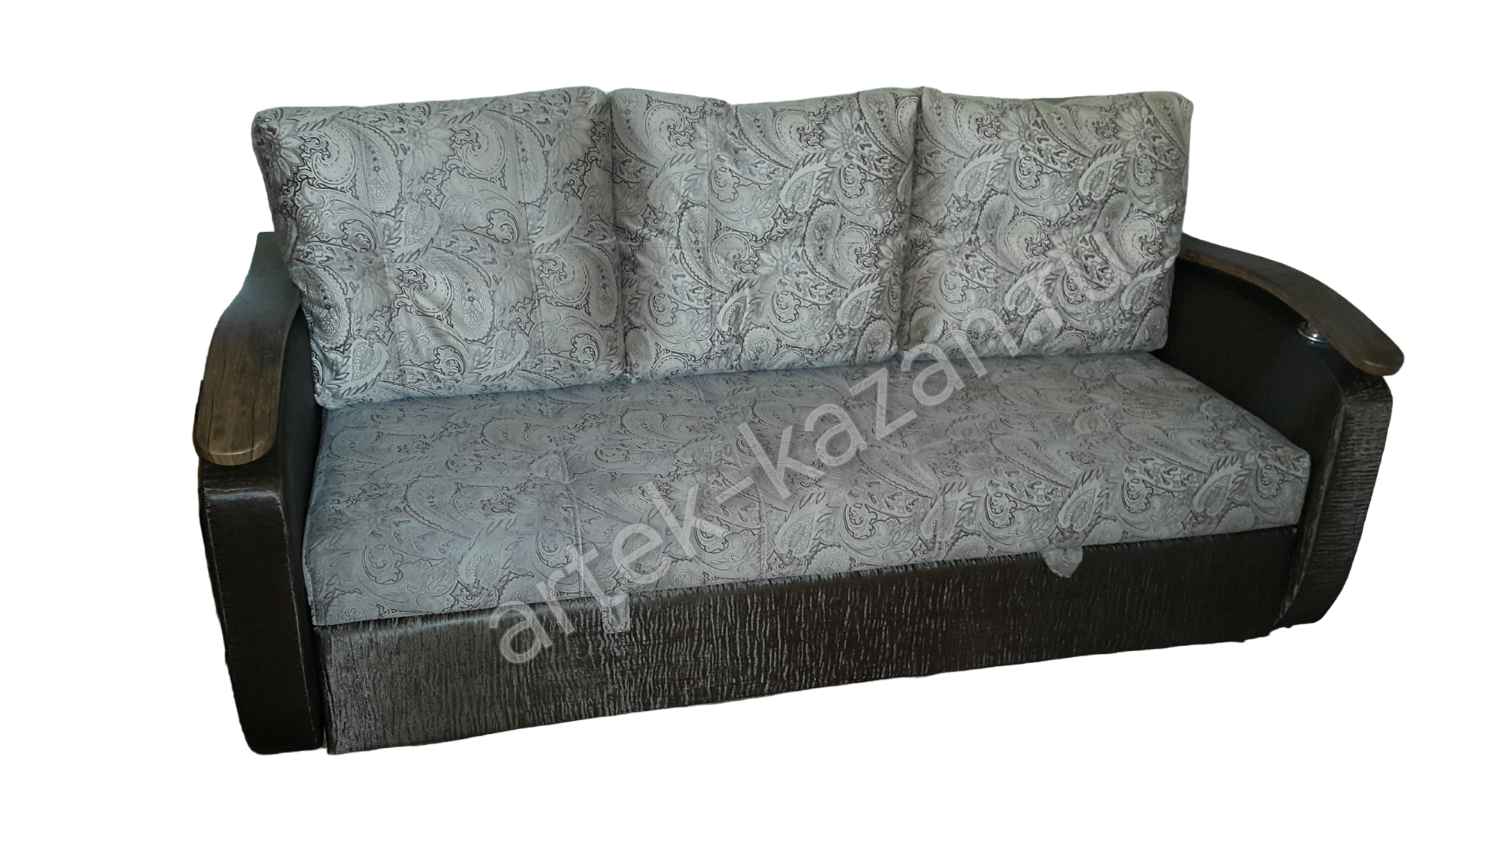 Мини диван на выкатном механизме Миник фото № 24. Купить недорогой диван по низкой цене от производителя можно у нас.